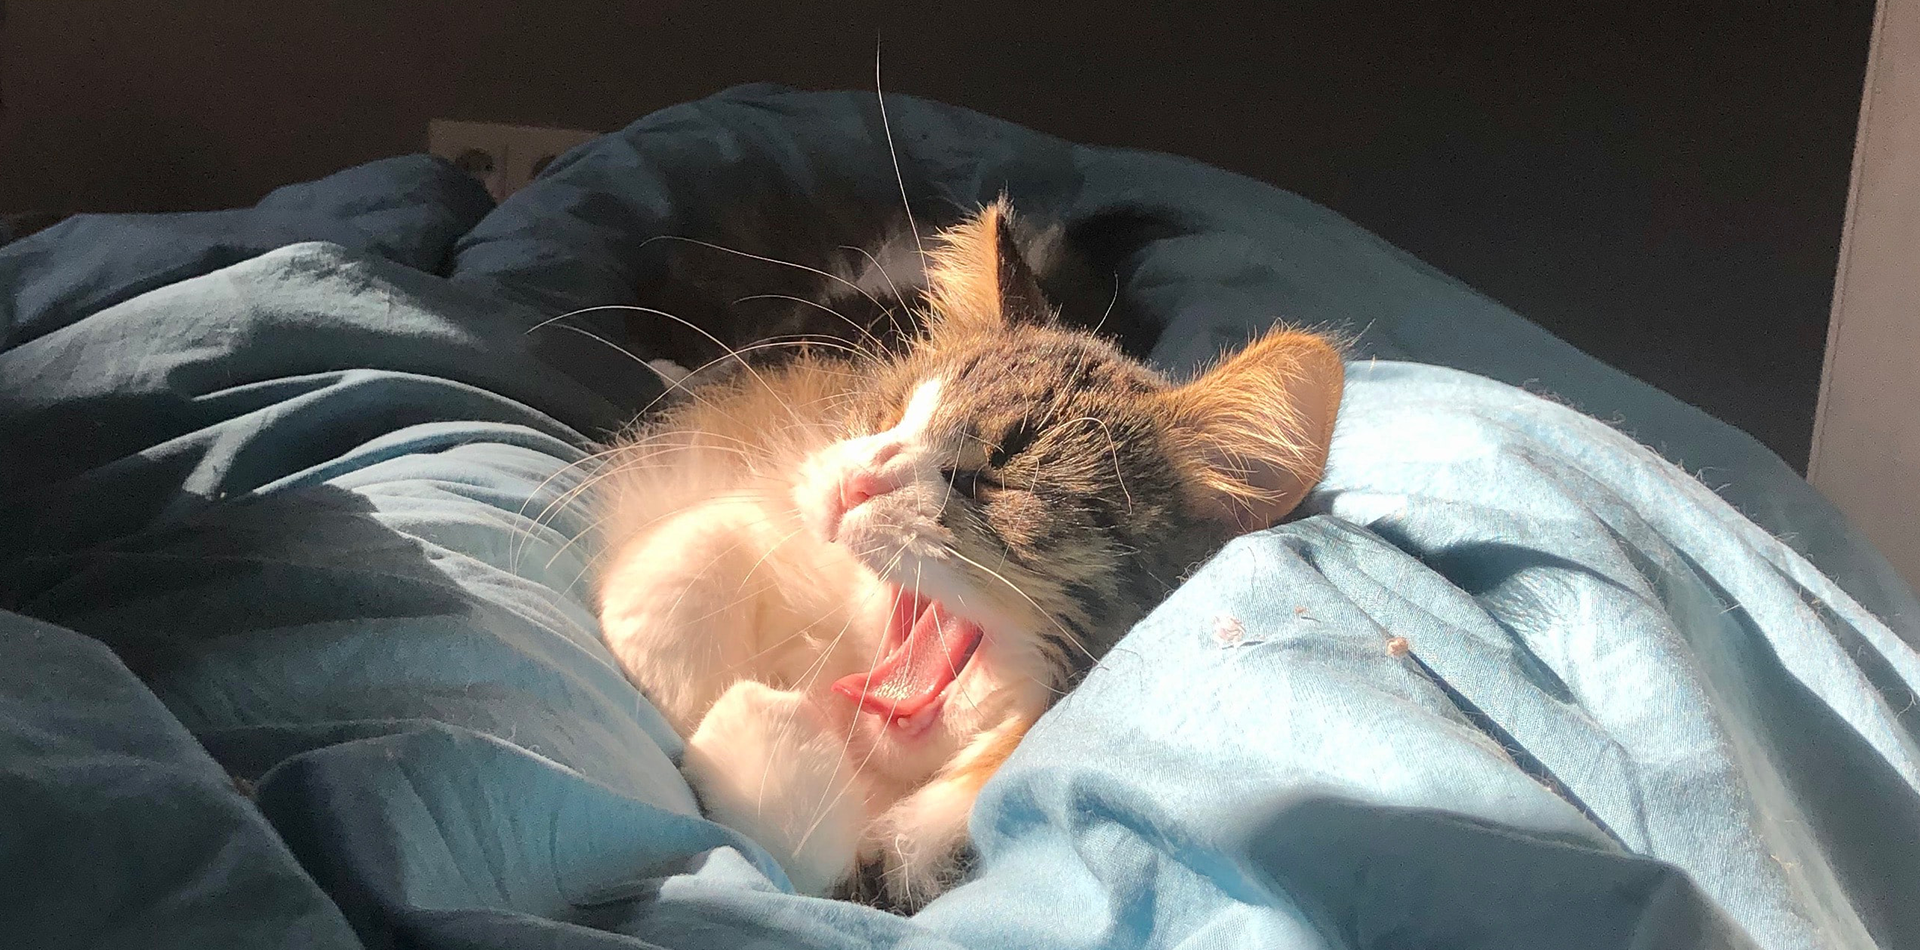 A kitten yawns on the sun